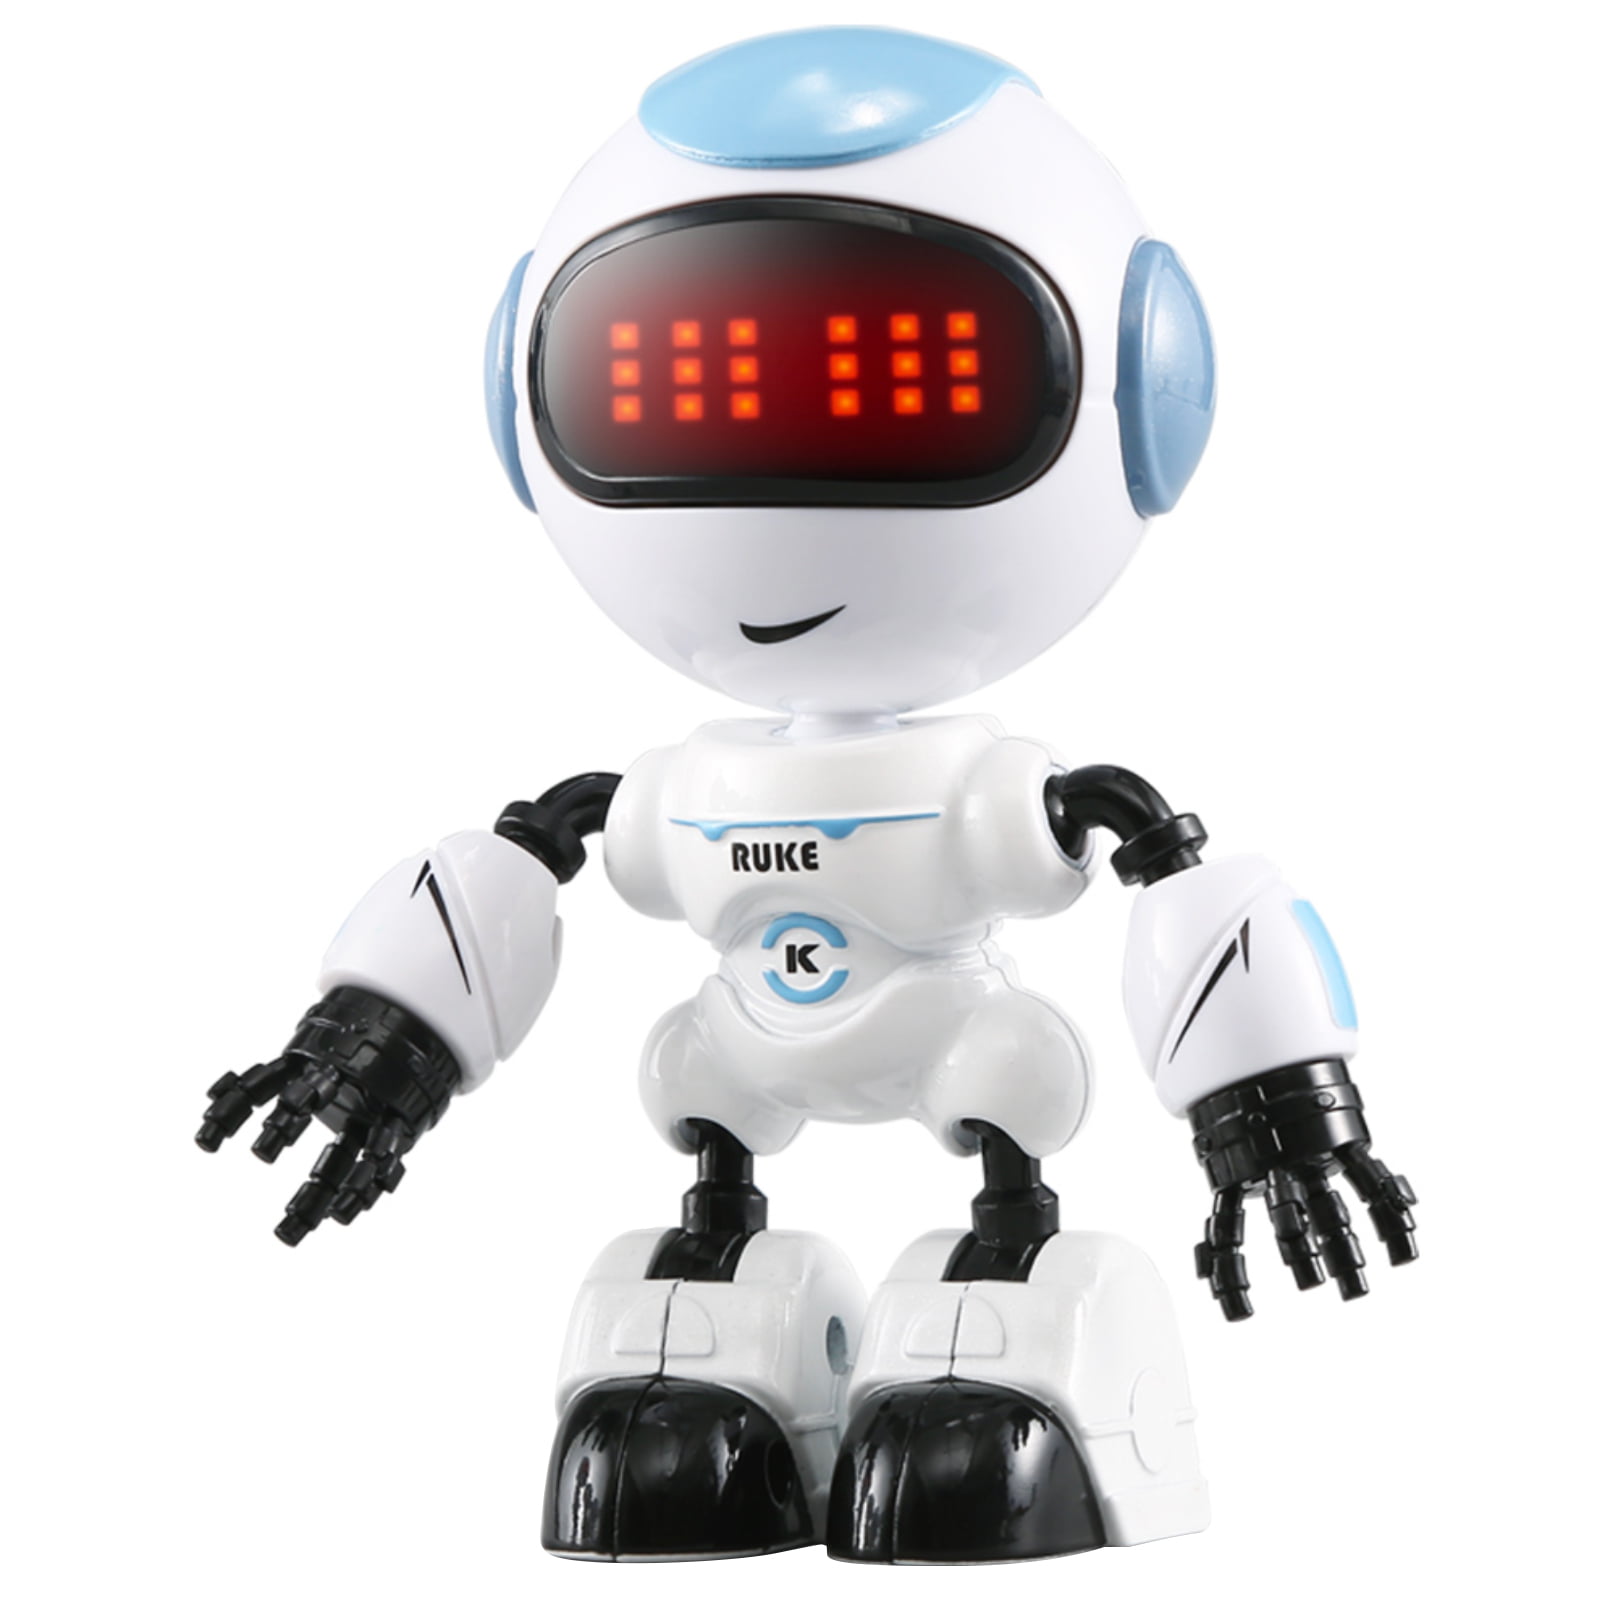 JJR/C R8 LUKE Intelligent Robot  Control DIY Gesture Talk Smart Mini B4E6 